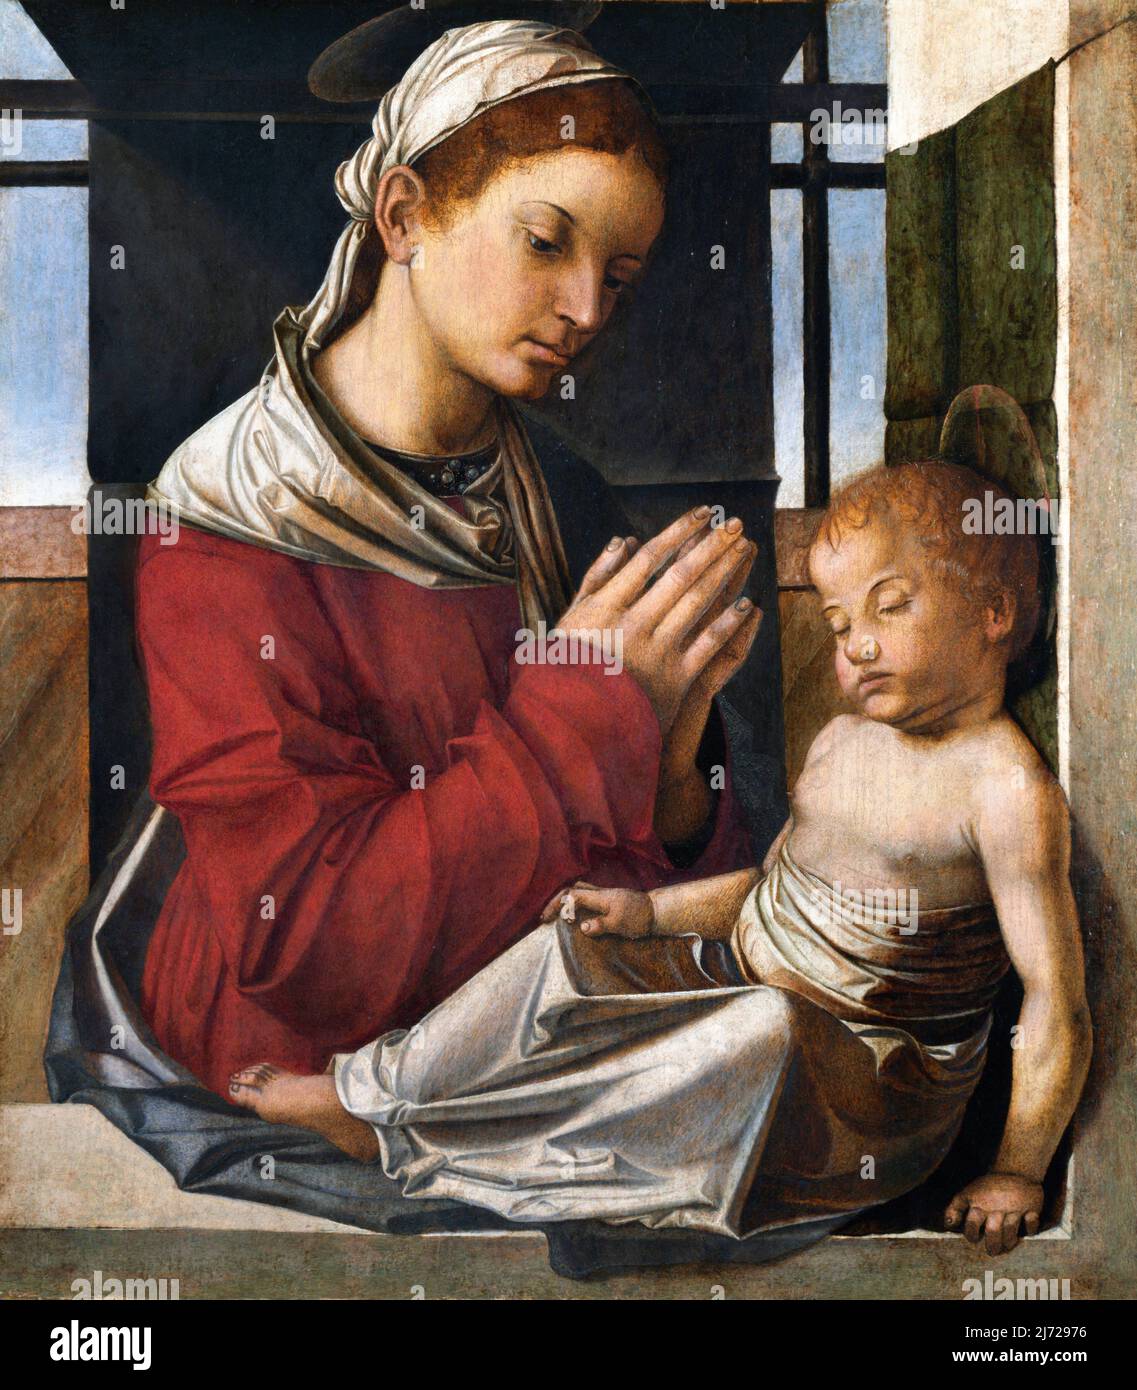 La Vierge et l'enfant par Bartolomeo Montagna (v.1450-1523), huile sur toile transférée du bois, c. 1504-6 Banque D'Images